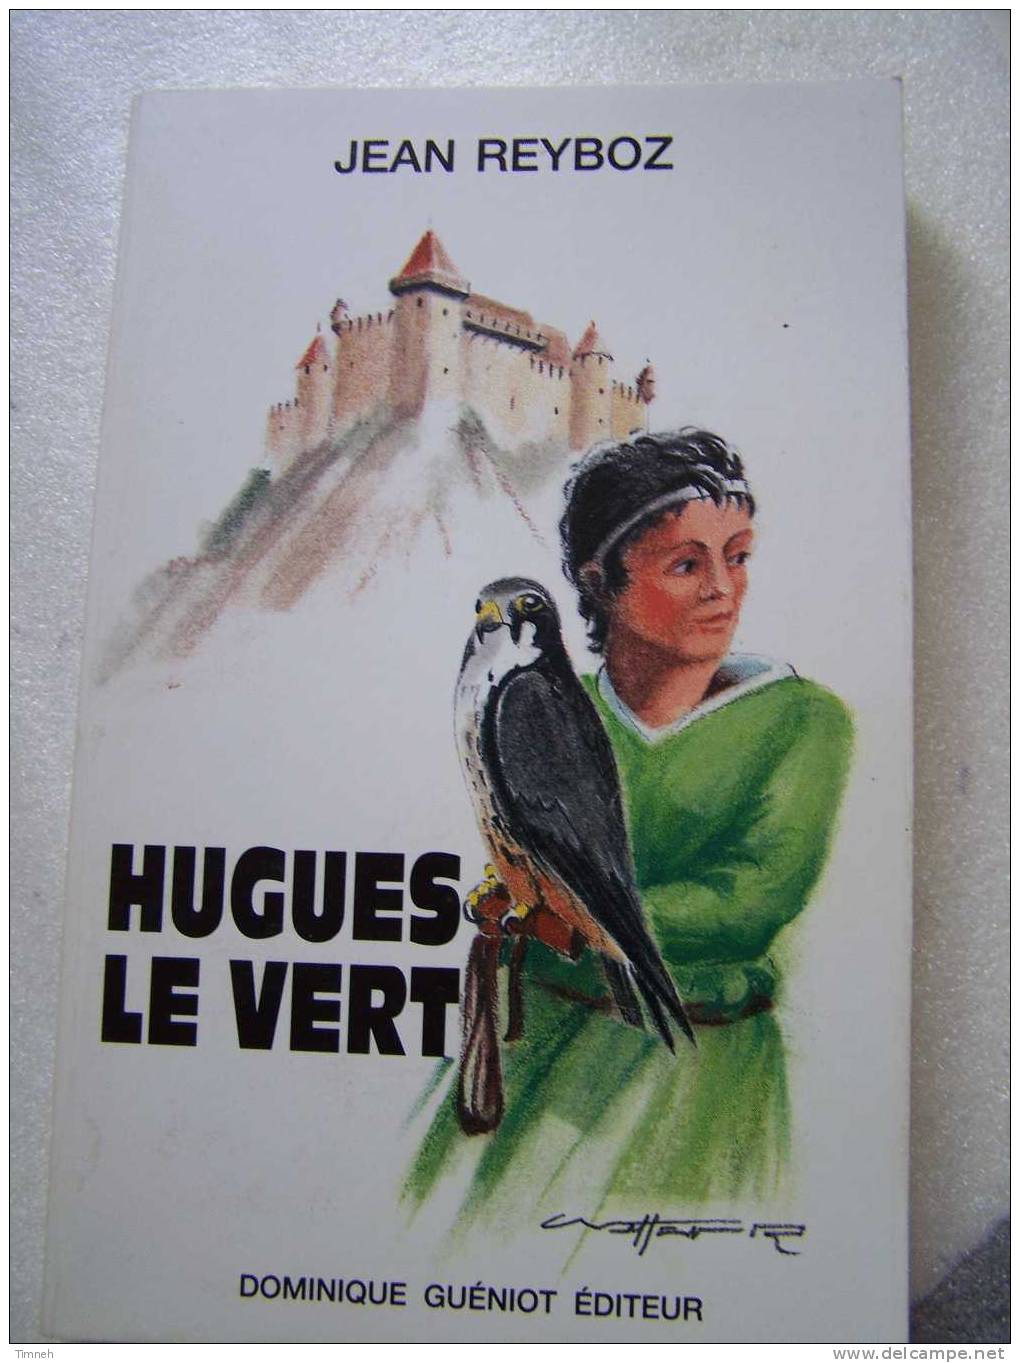 HUGUES LE VERT-Jean REYBOZ-1988 Dominique Guéniot éditeur -roman Historique-broché-AUGEULX-Haute Saône-e - Franche-Comté